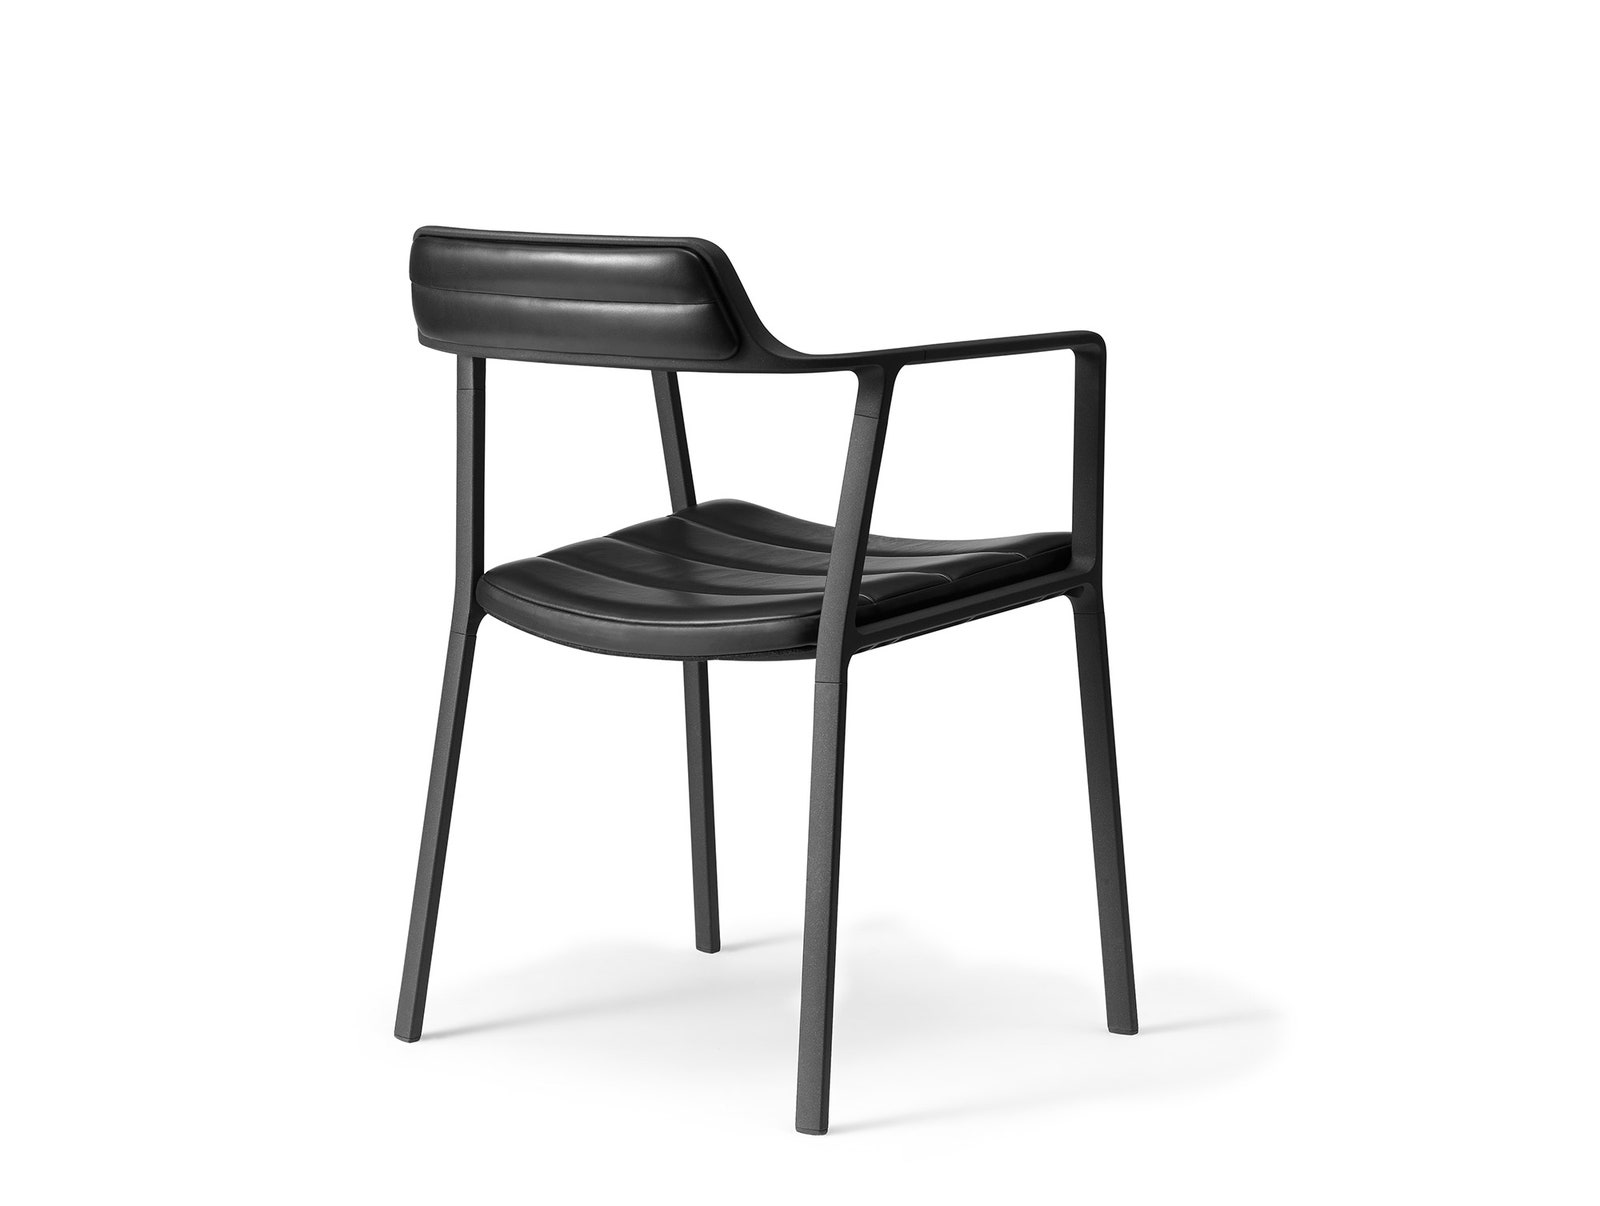 Дизайн лаконичного кресла от Vipp